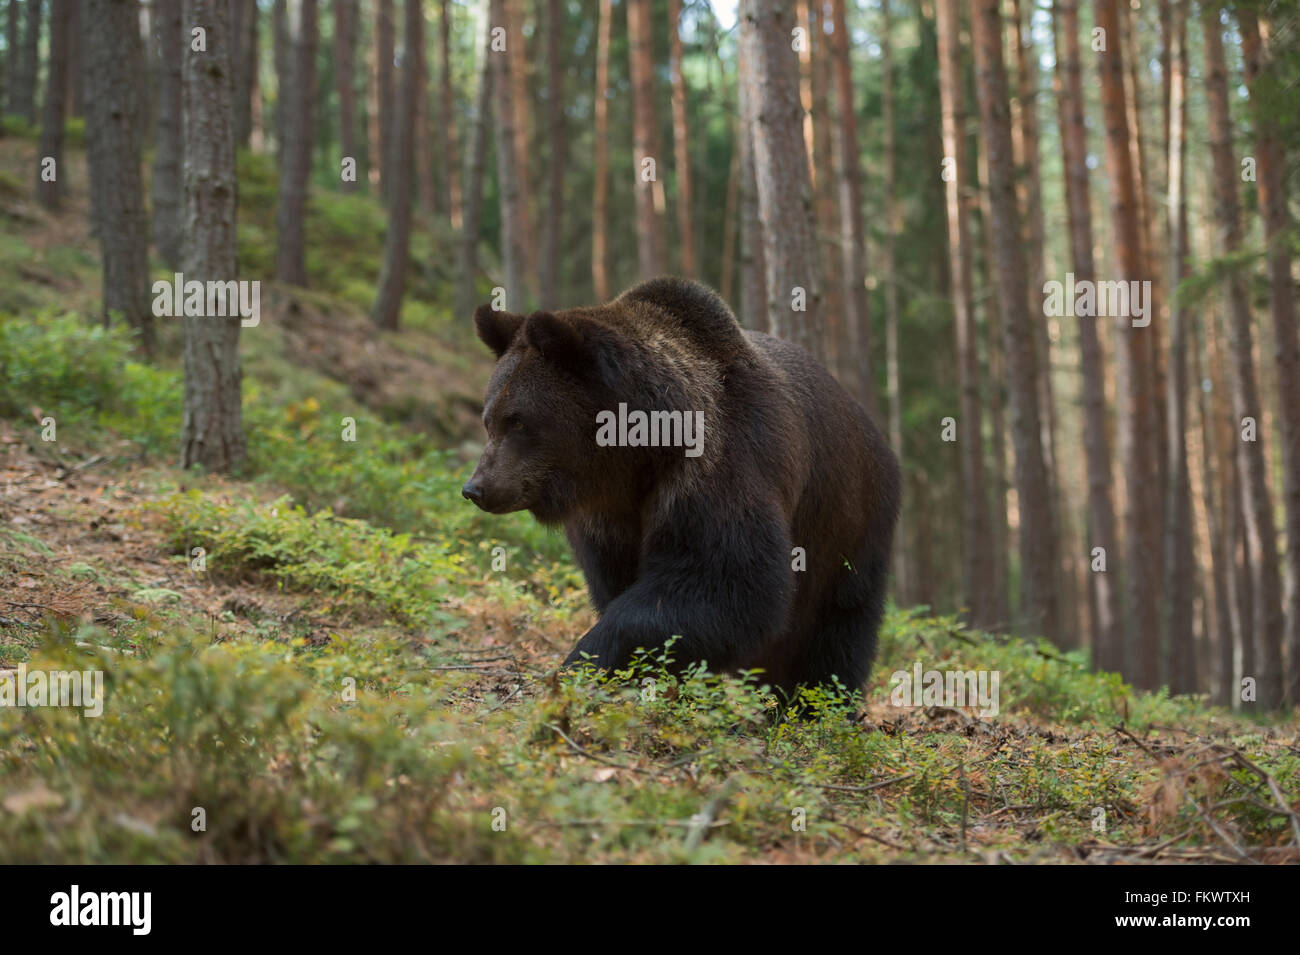 Unione orso bruno / Europaeischer Braunbaer ( Ursus arctos ) passeggiate in salita attraverso una foresta, in ambiente naturale. Foto Stock